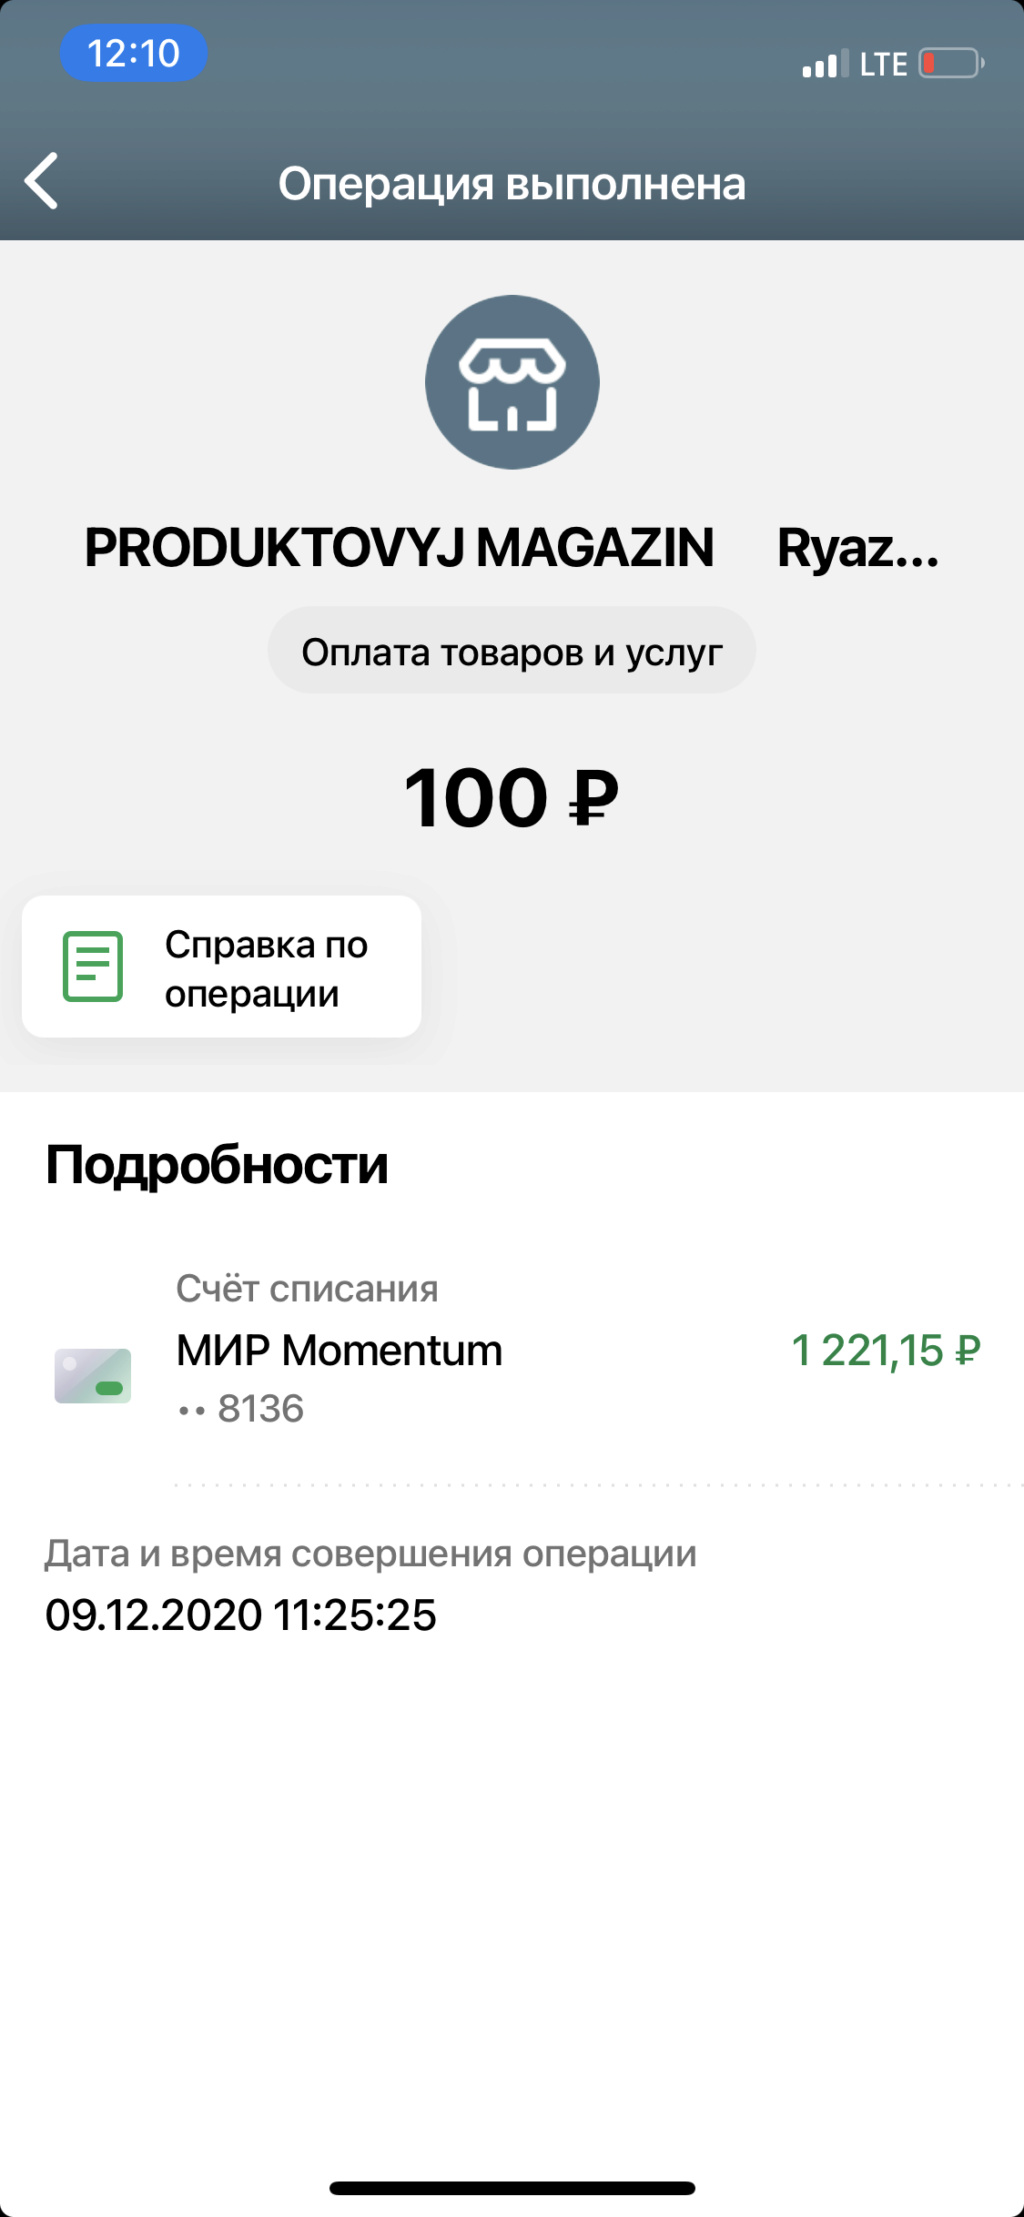 Что можно купить ровно на 100 рублей? Cb840010